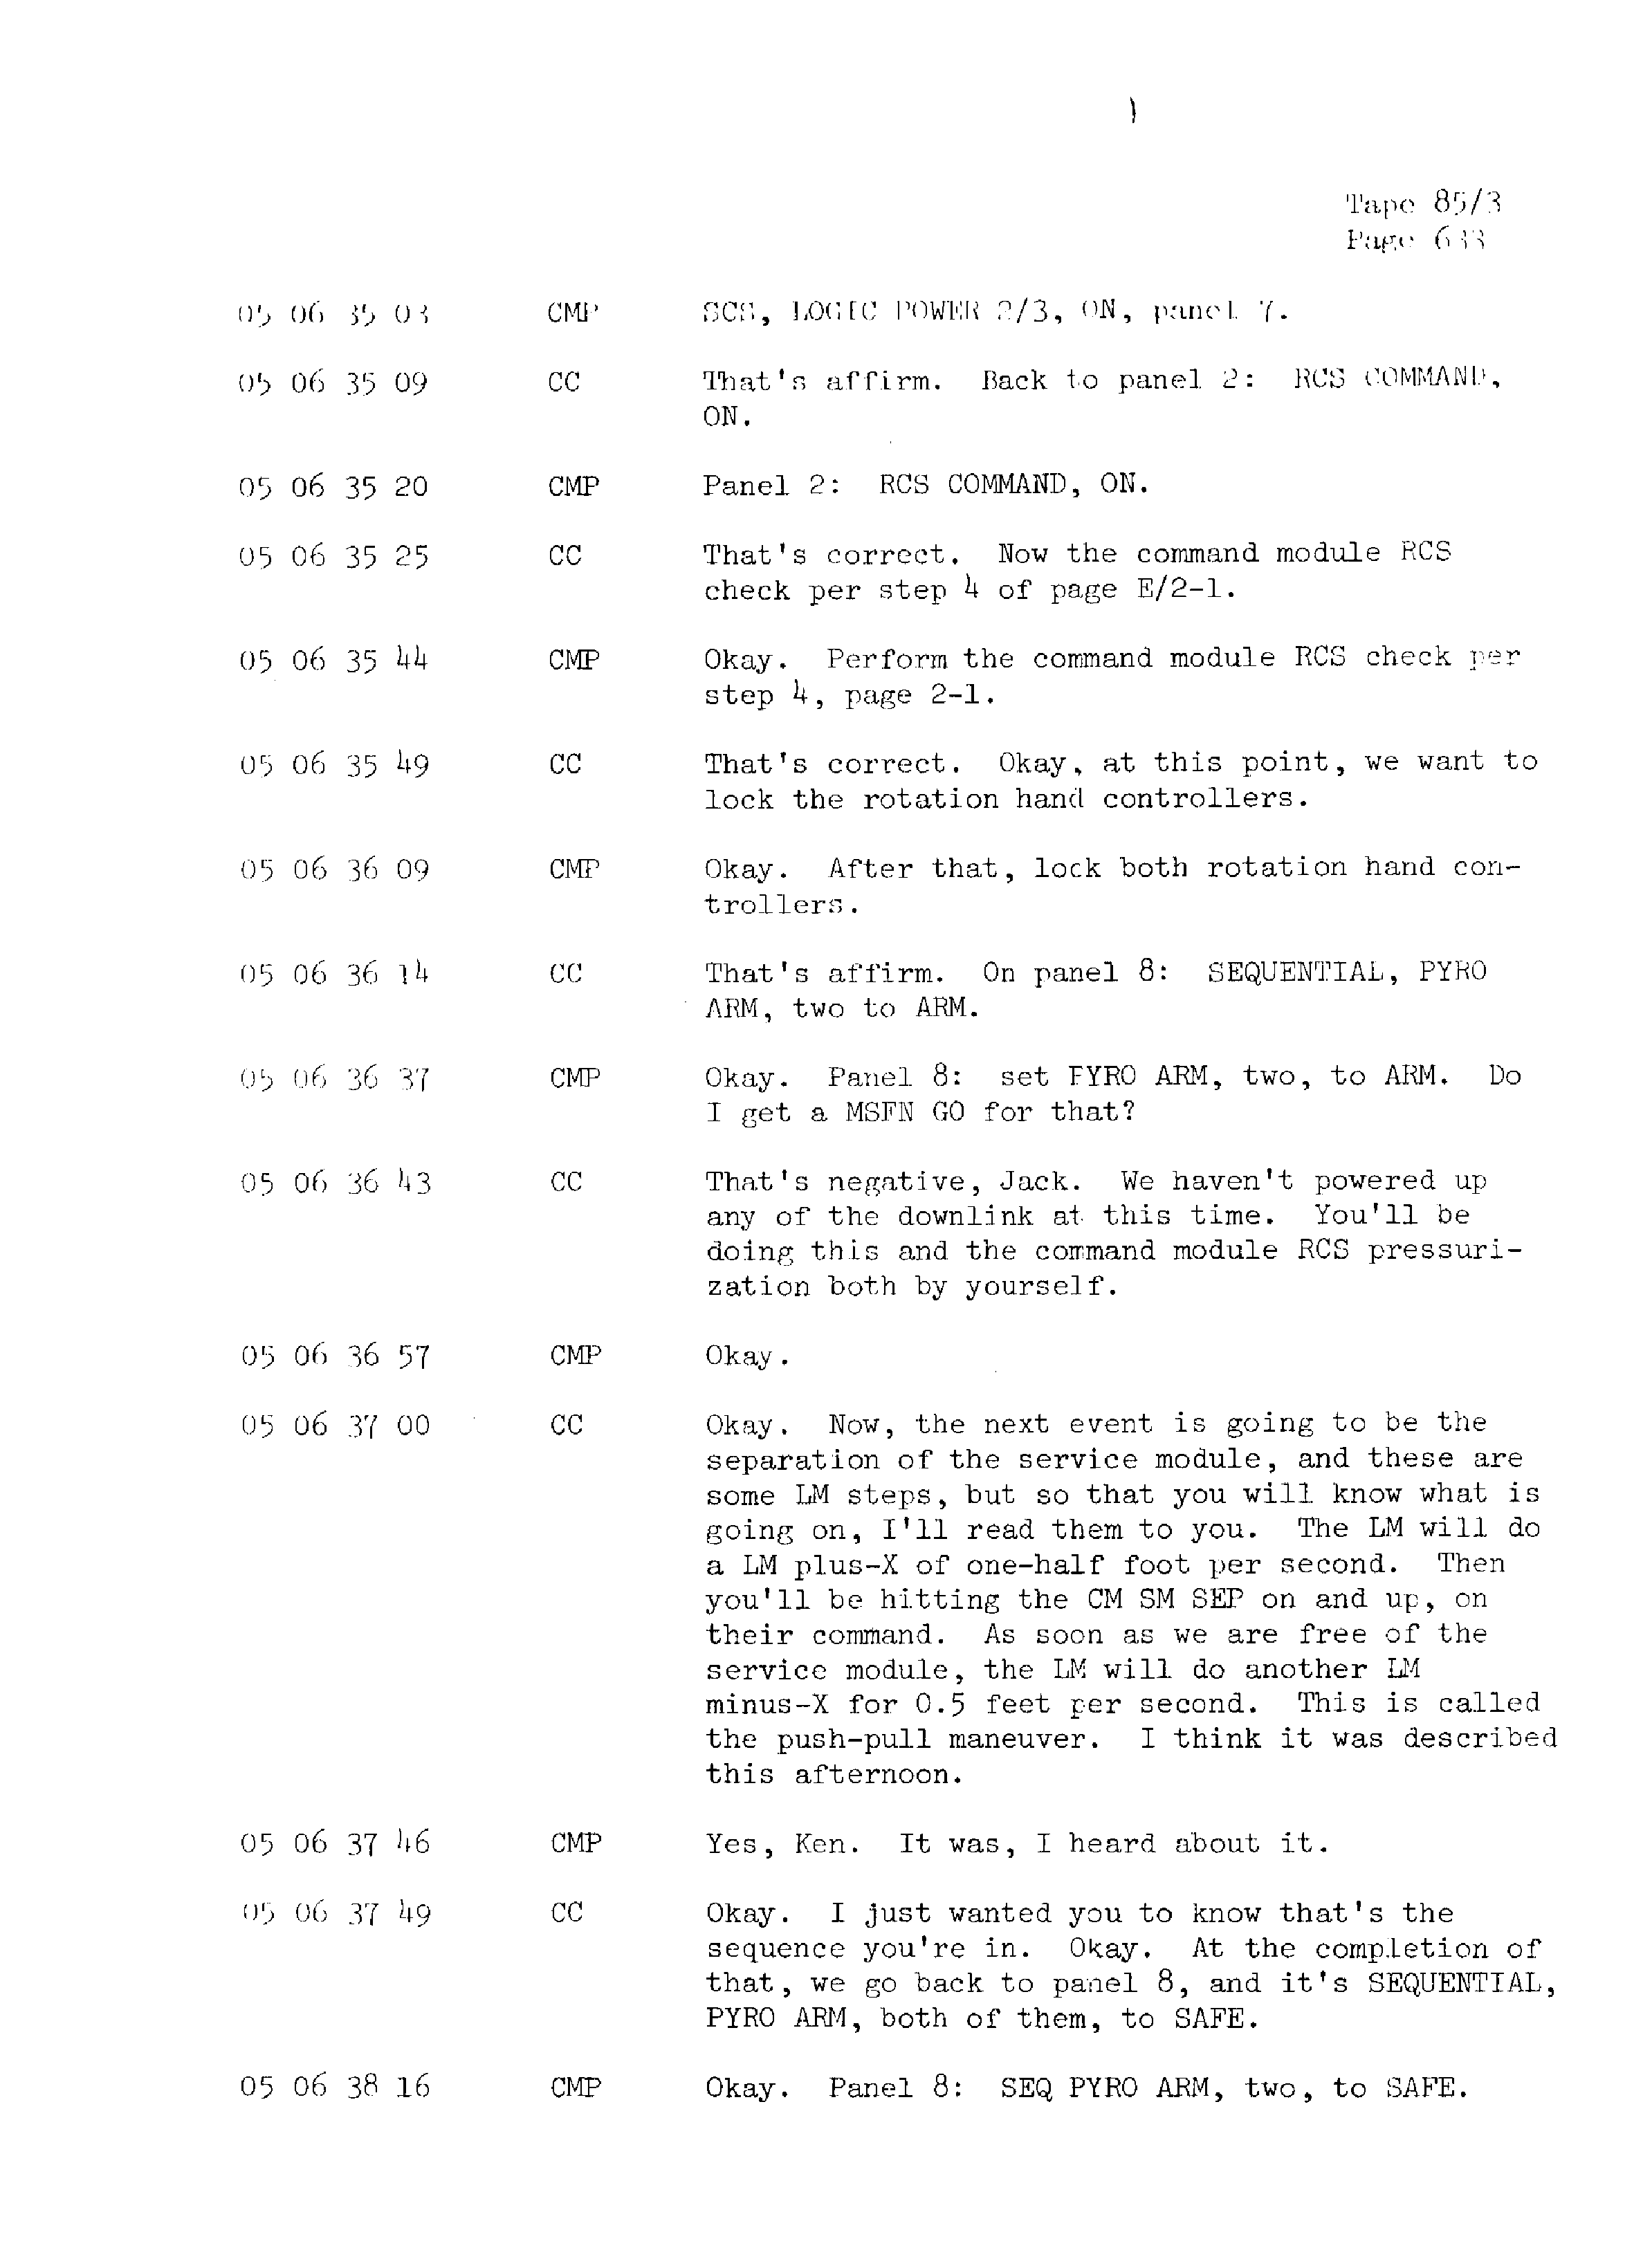 Page 640 of Apollo 13’s original transcript